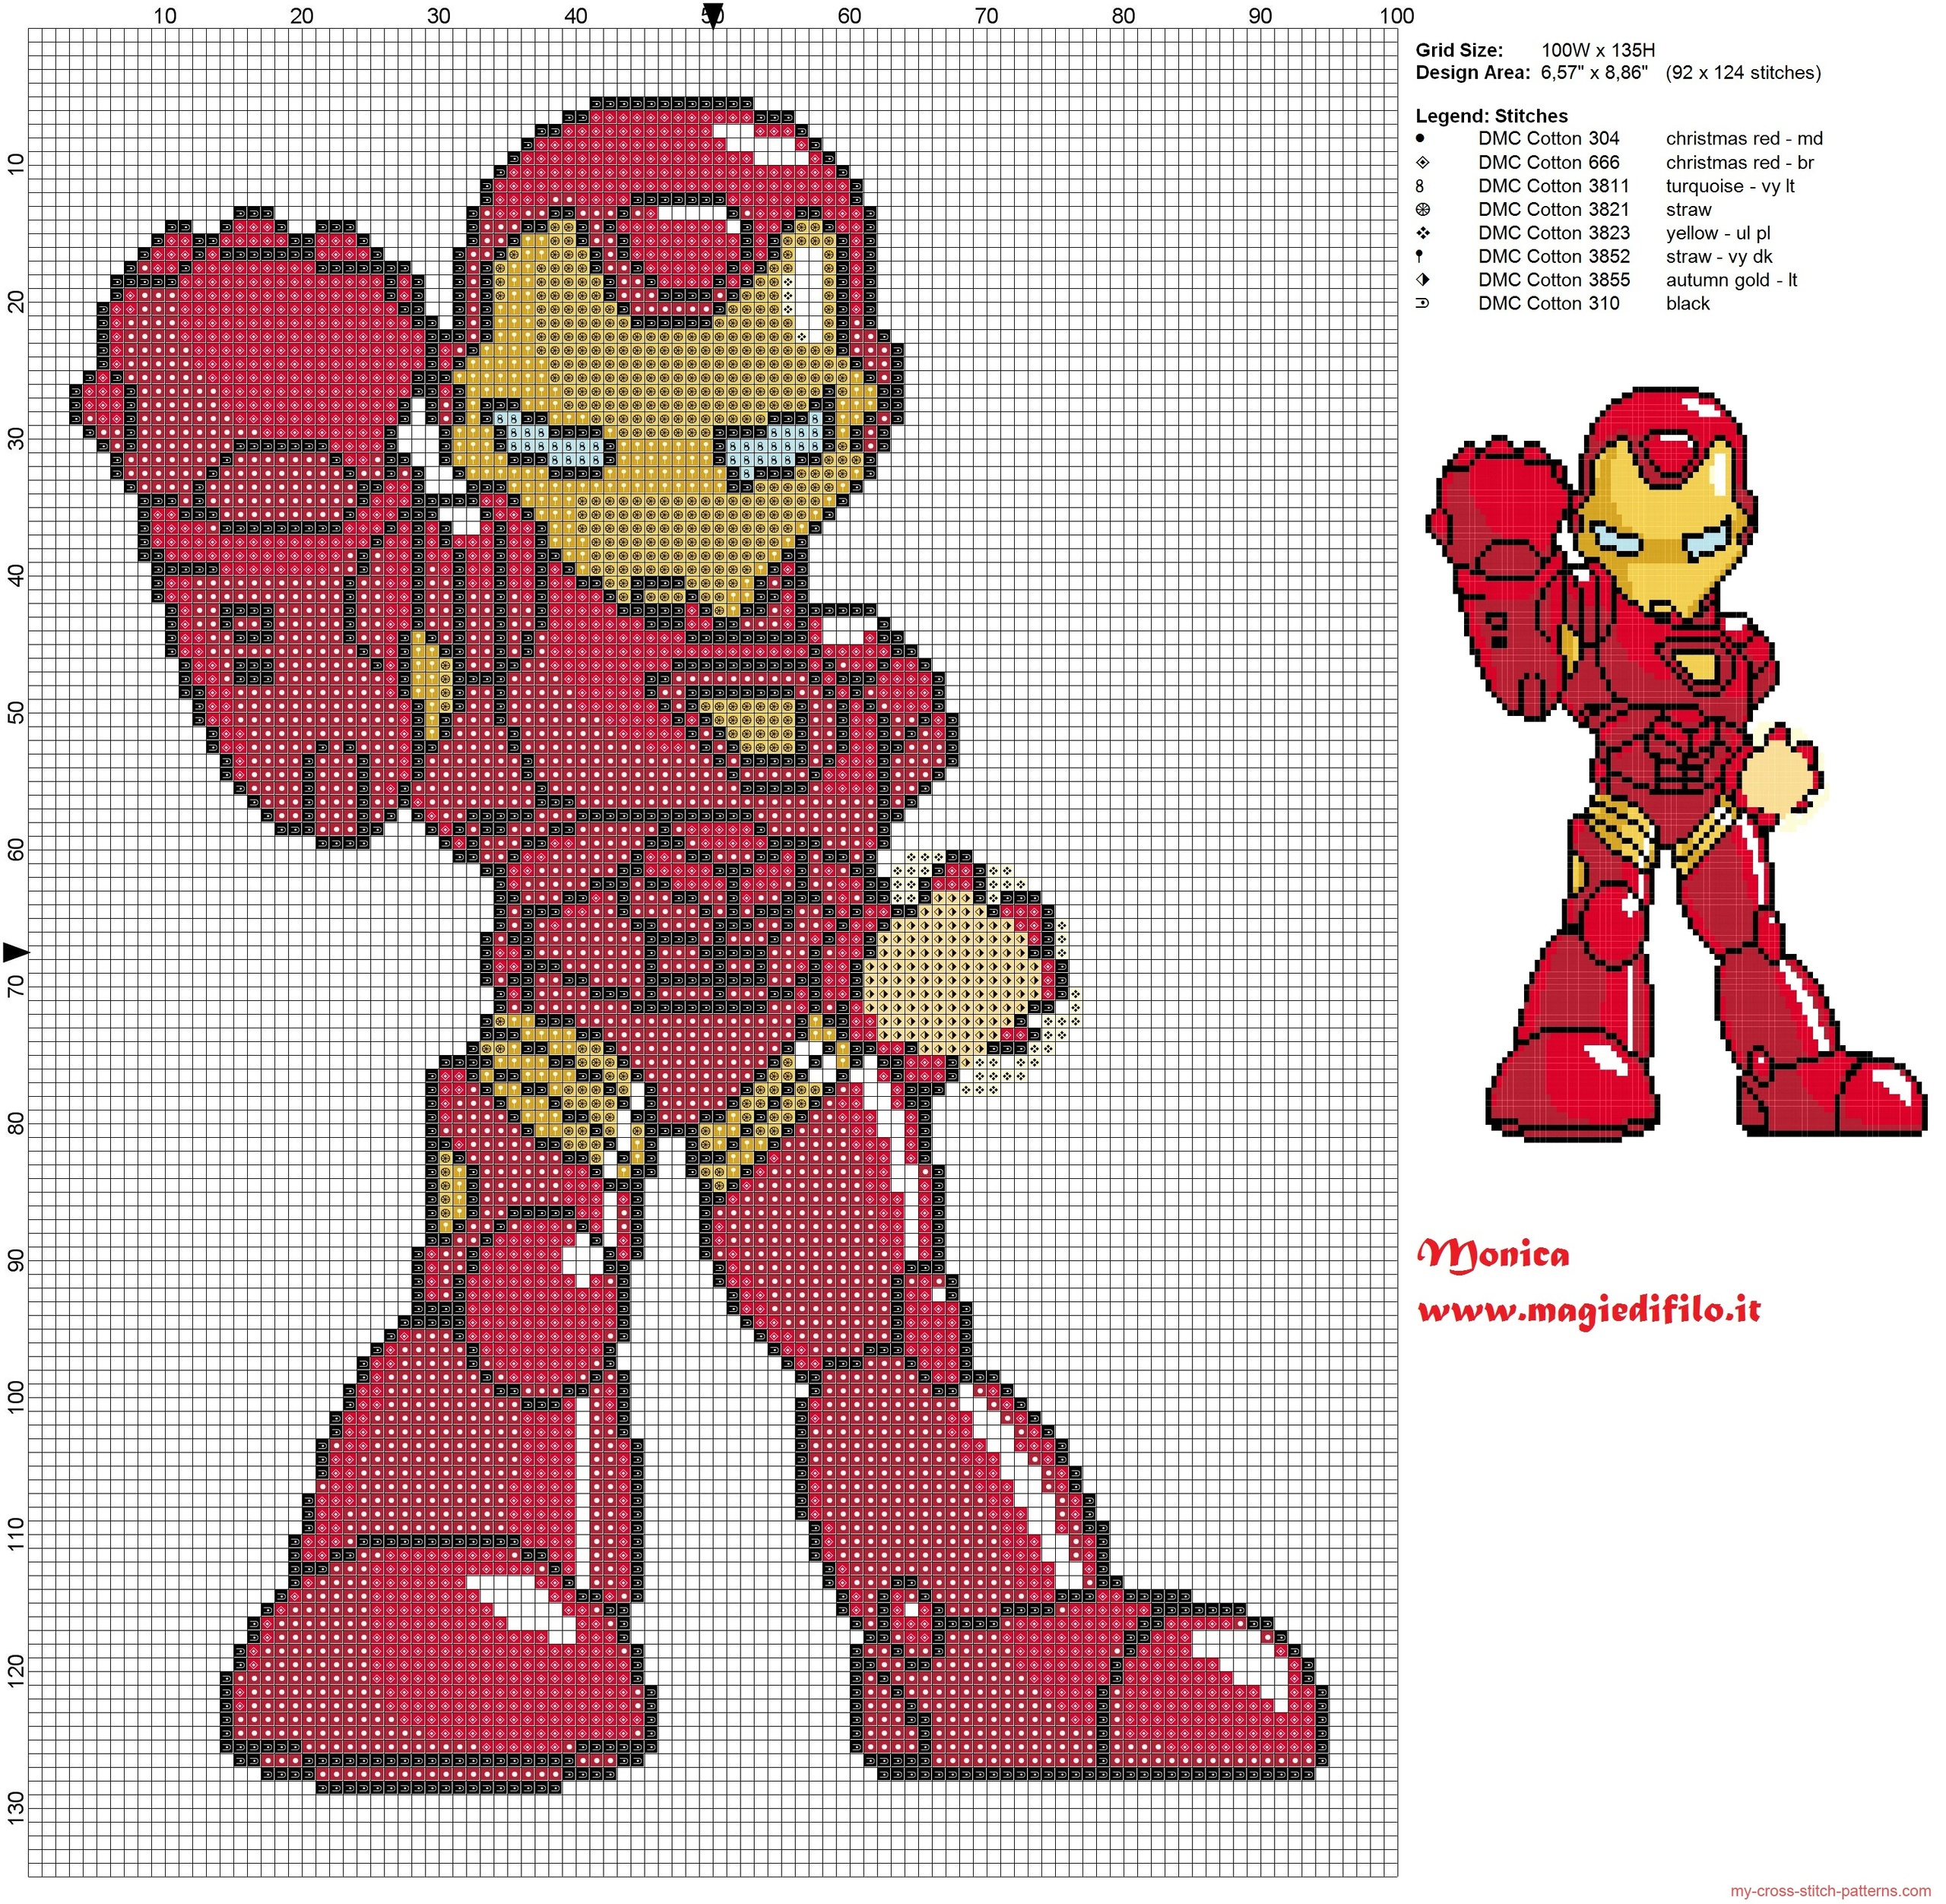 iron_man_cross_stitch_pattern_